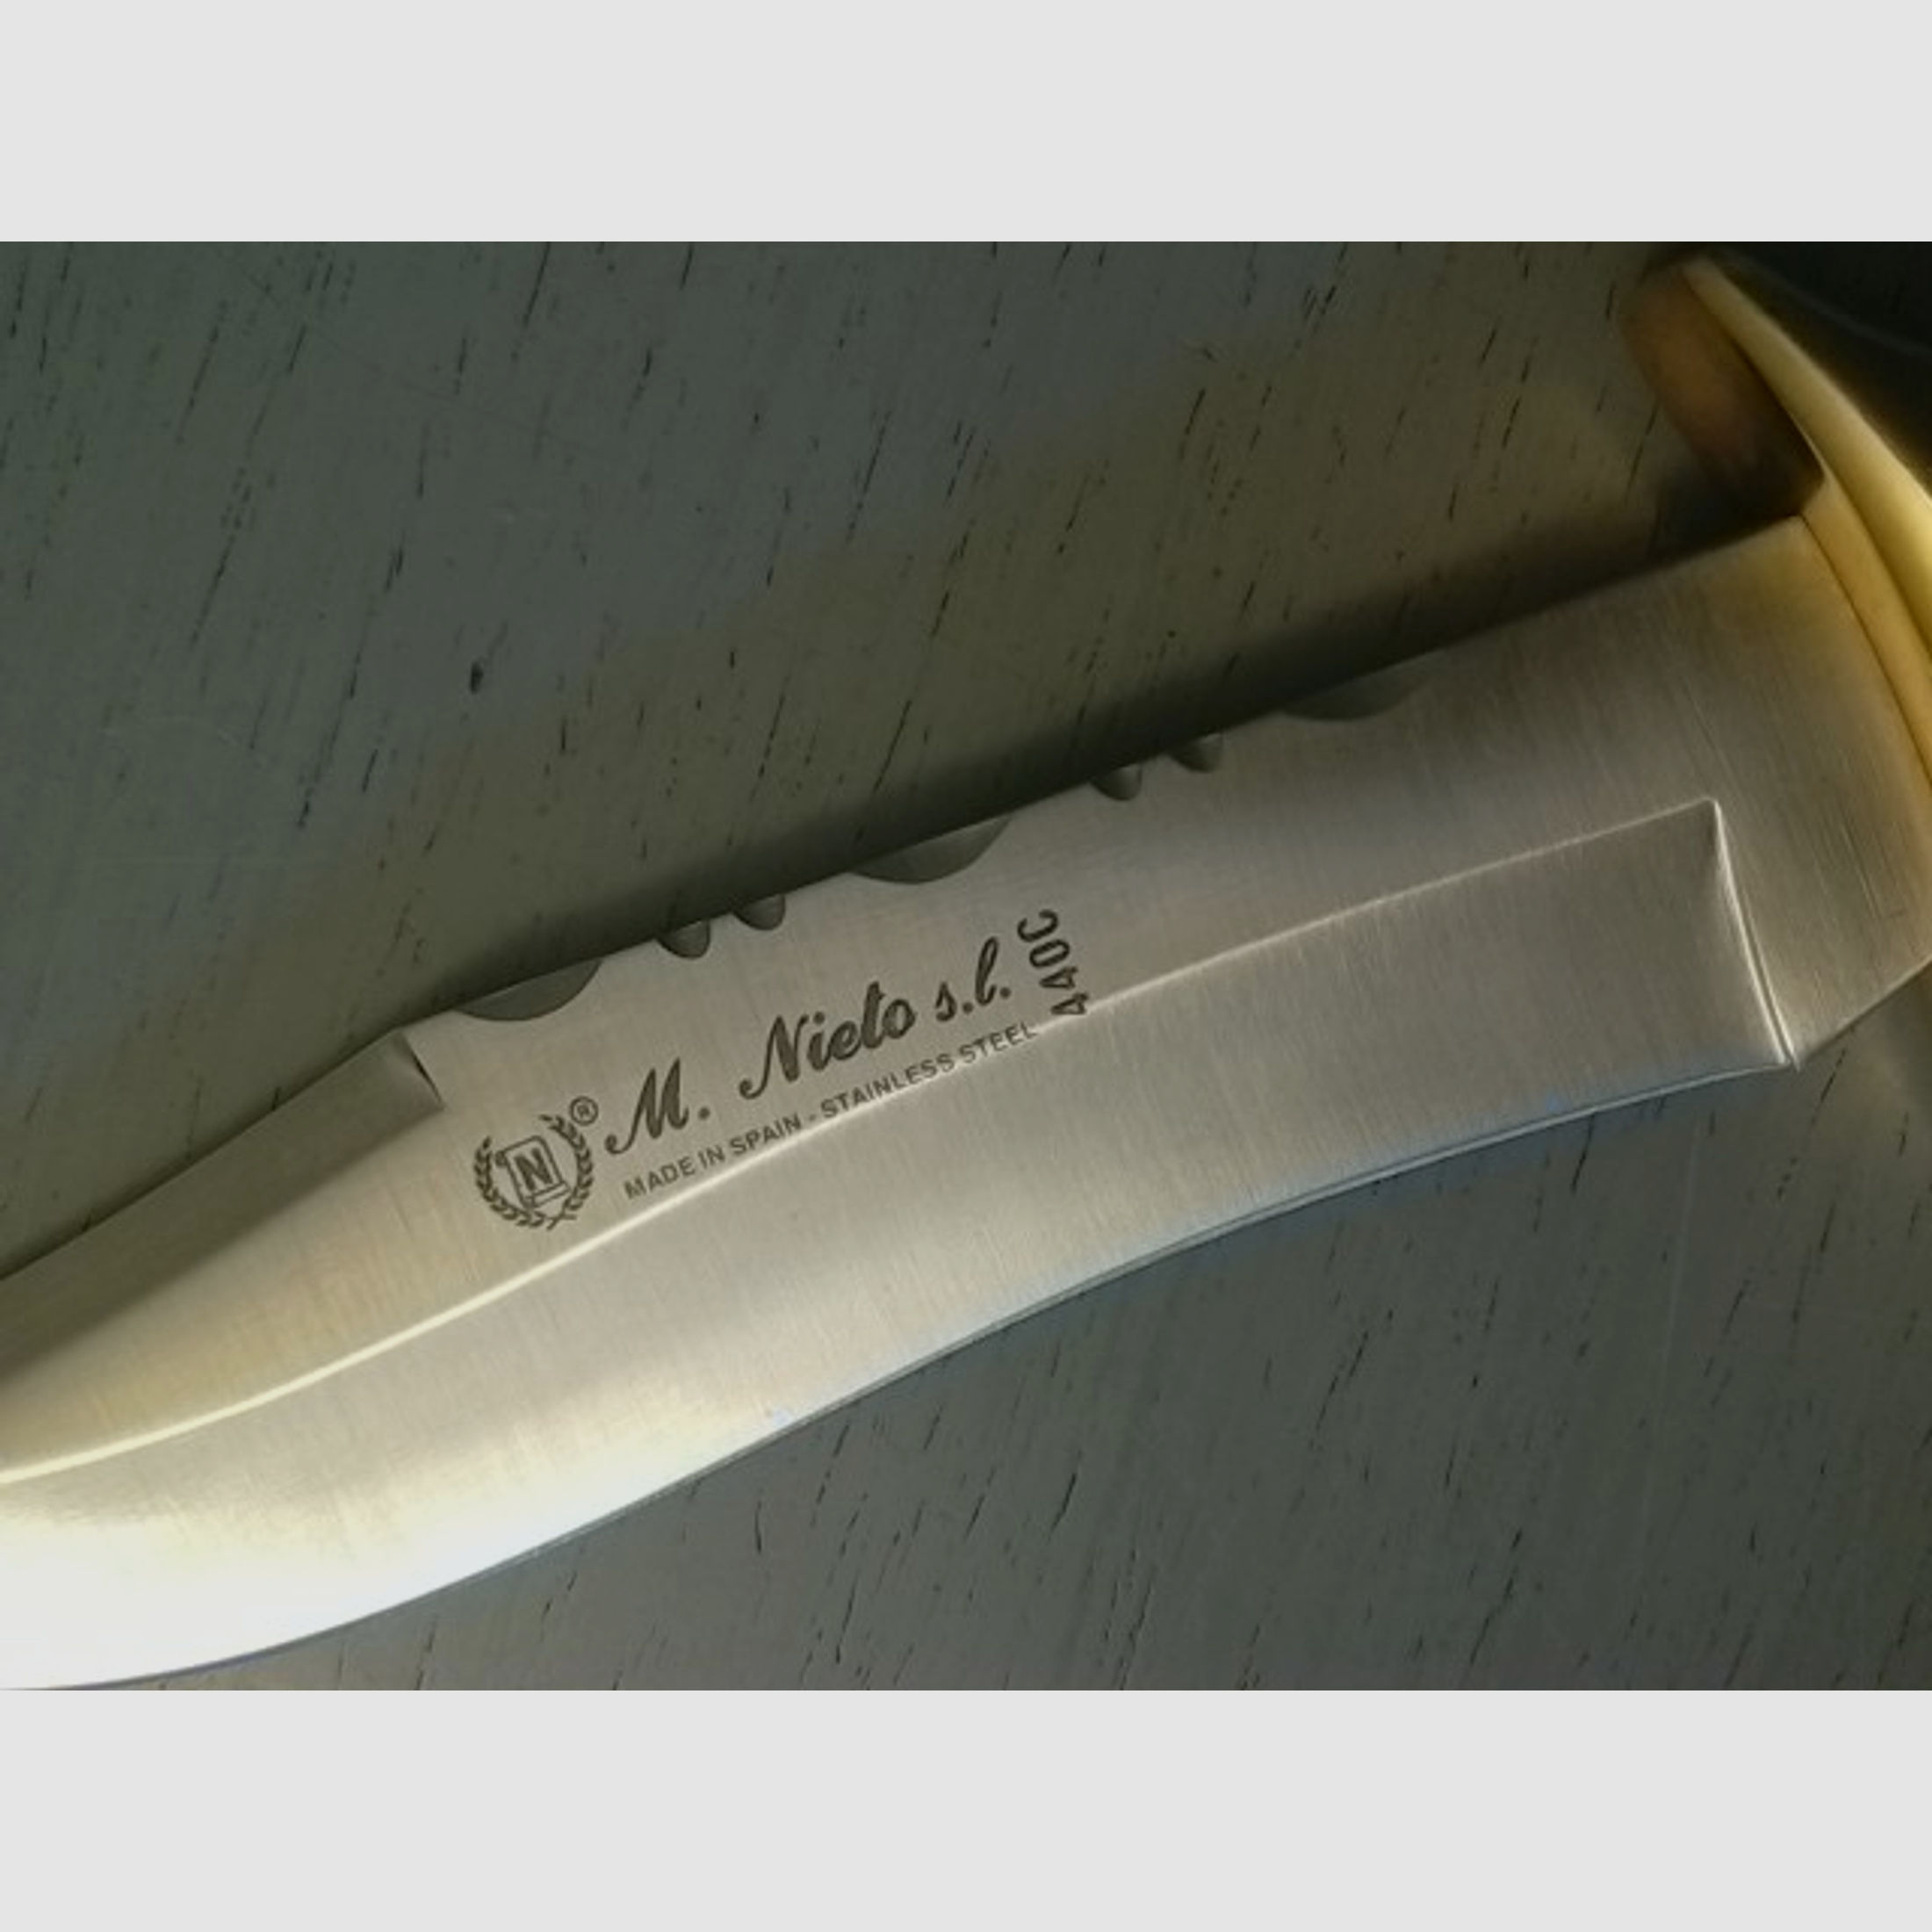 Feststehendes Messer